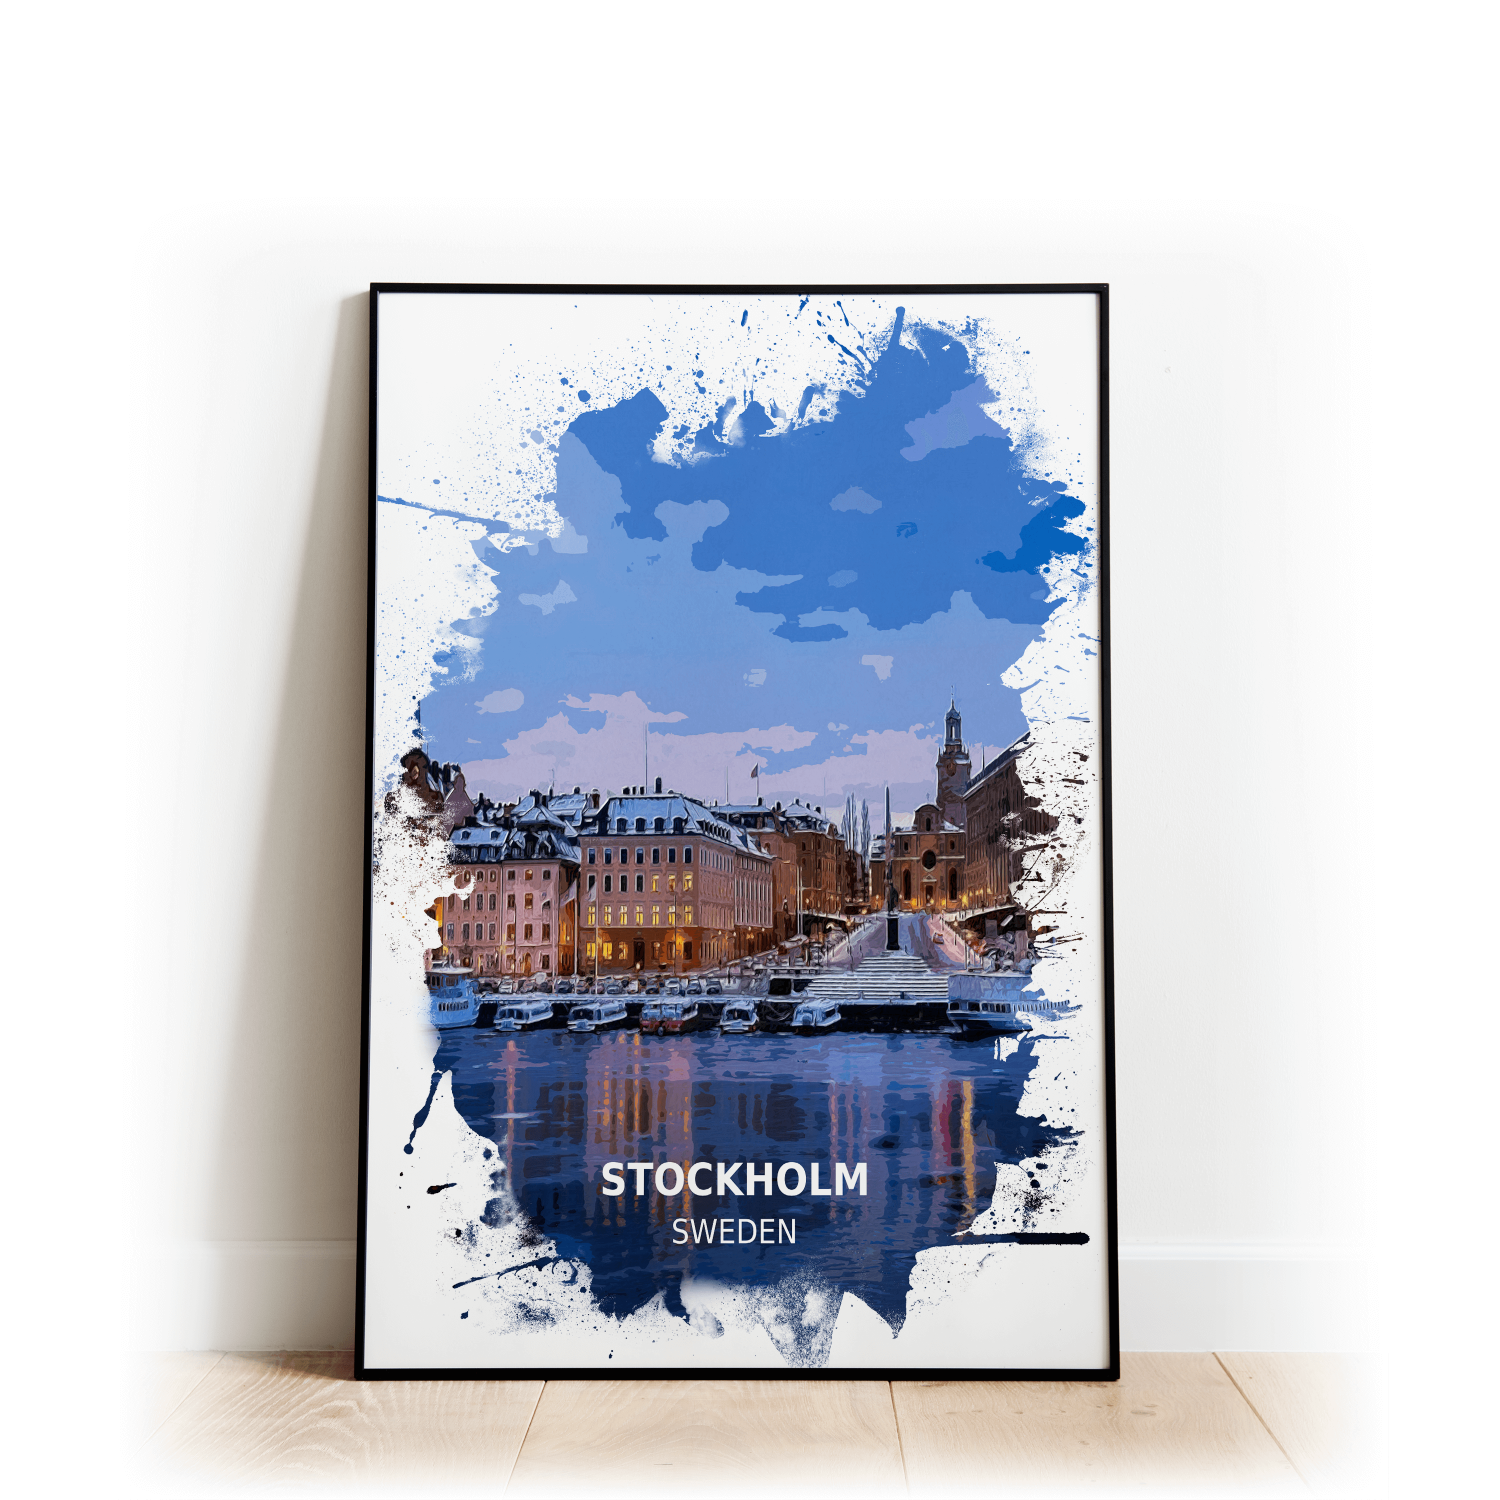 Stockholm - Sweden - Print - A4 - Standard - Print Only